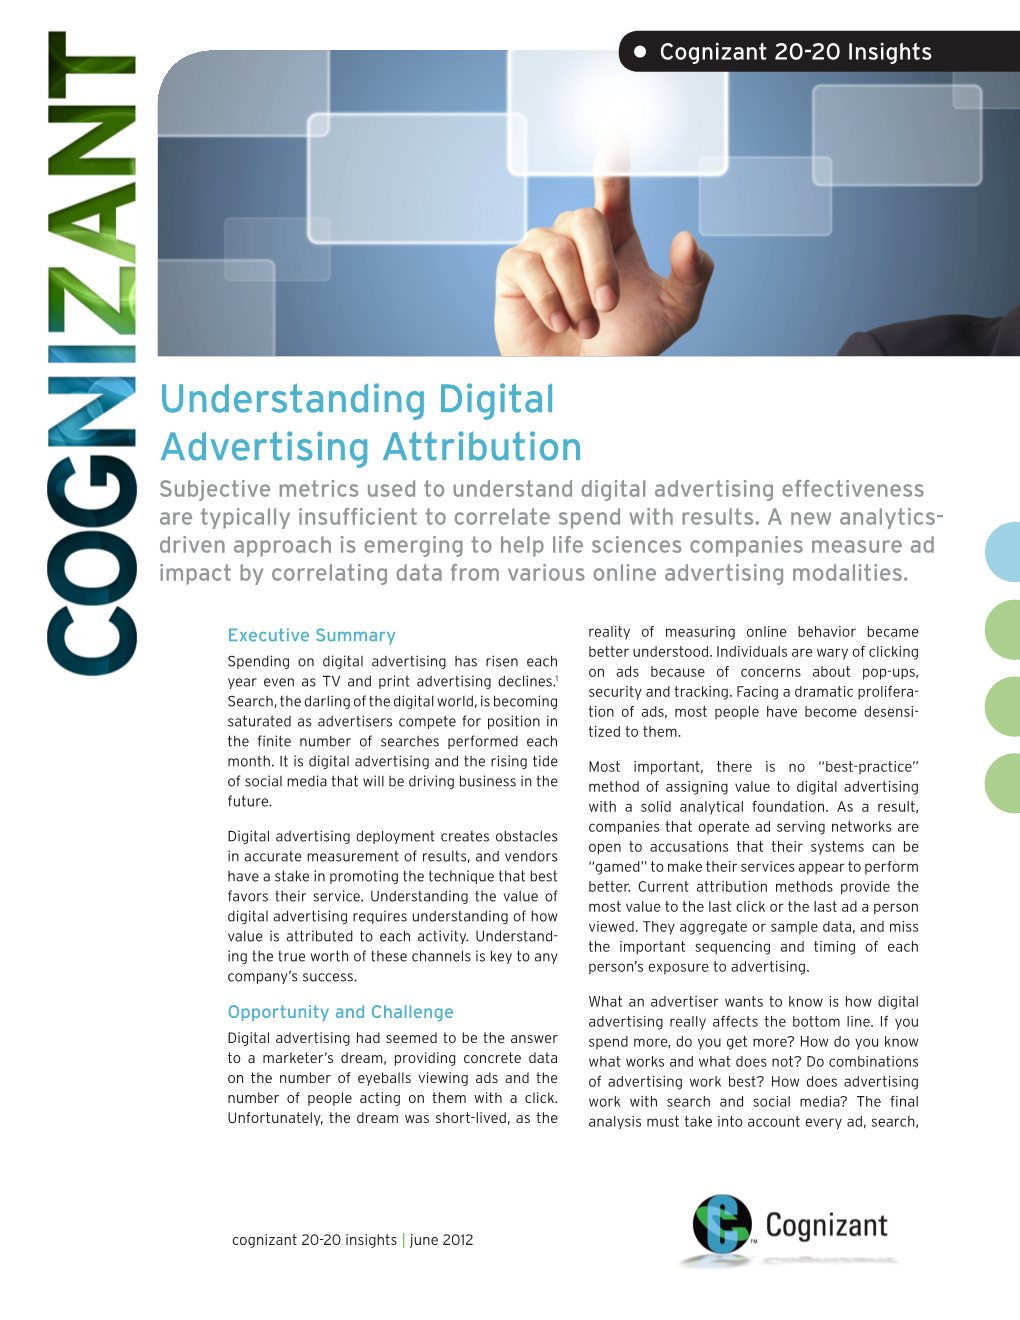 Understanding Digital Advertising Attribution